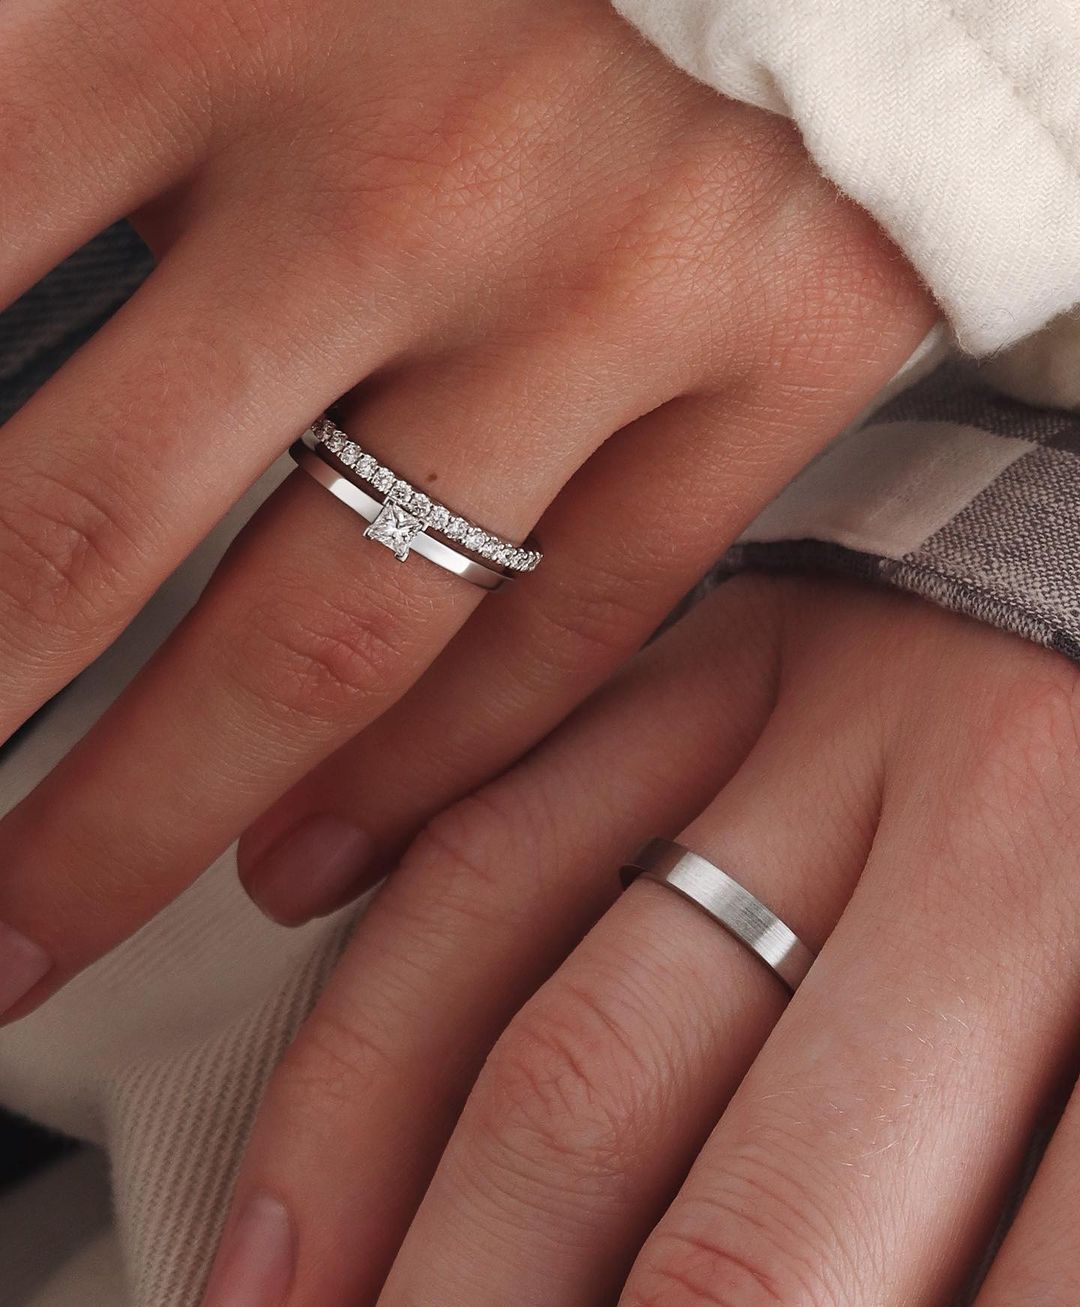 На каком пальце и какой руке носят обручальное кольцо?